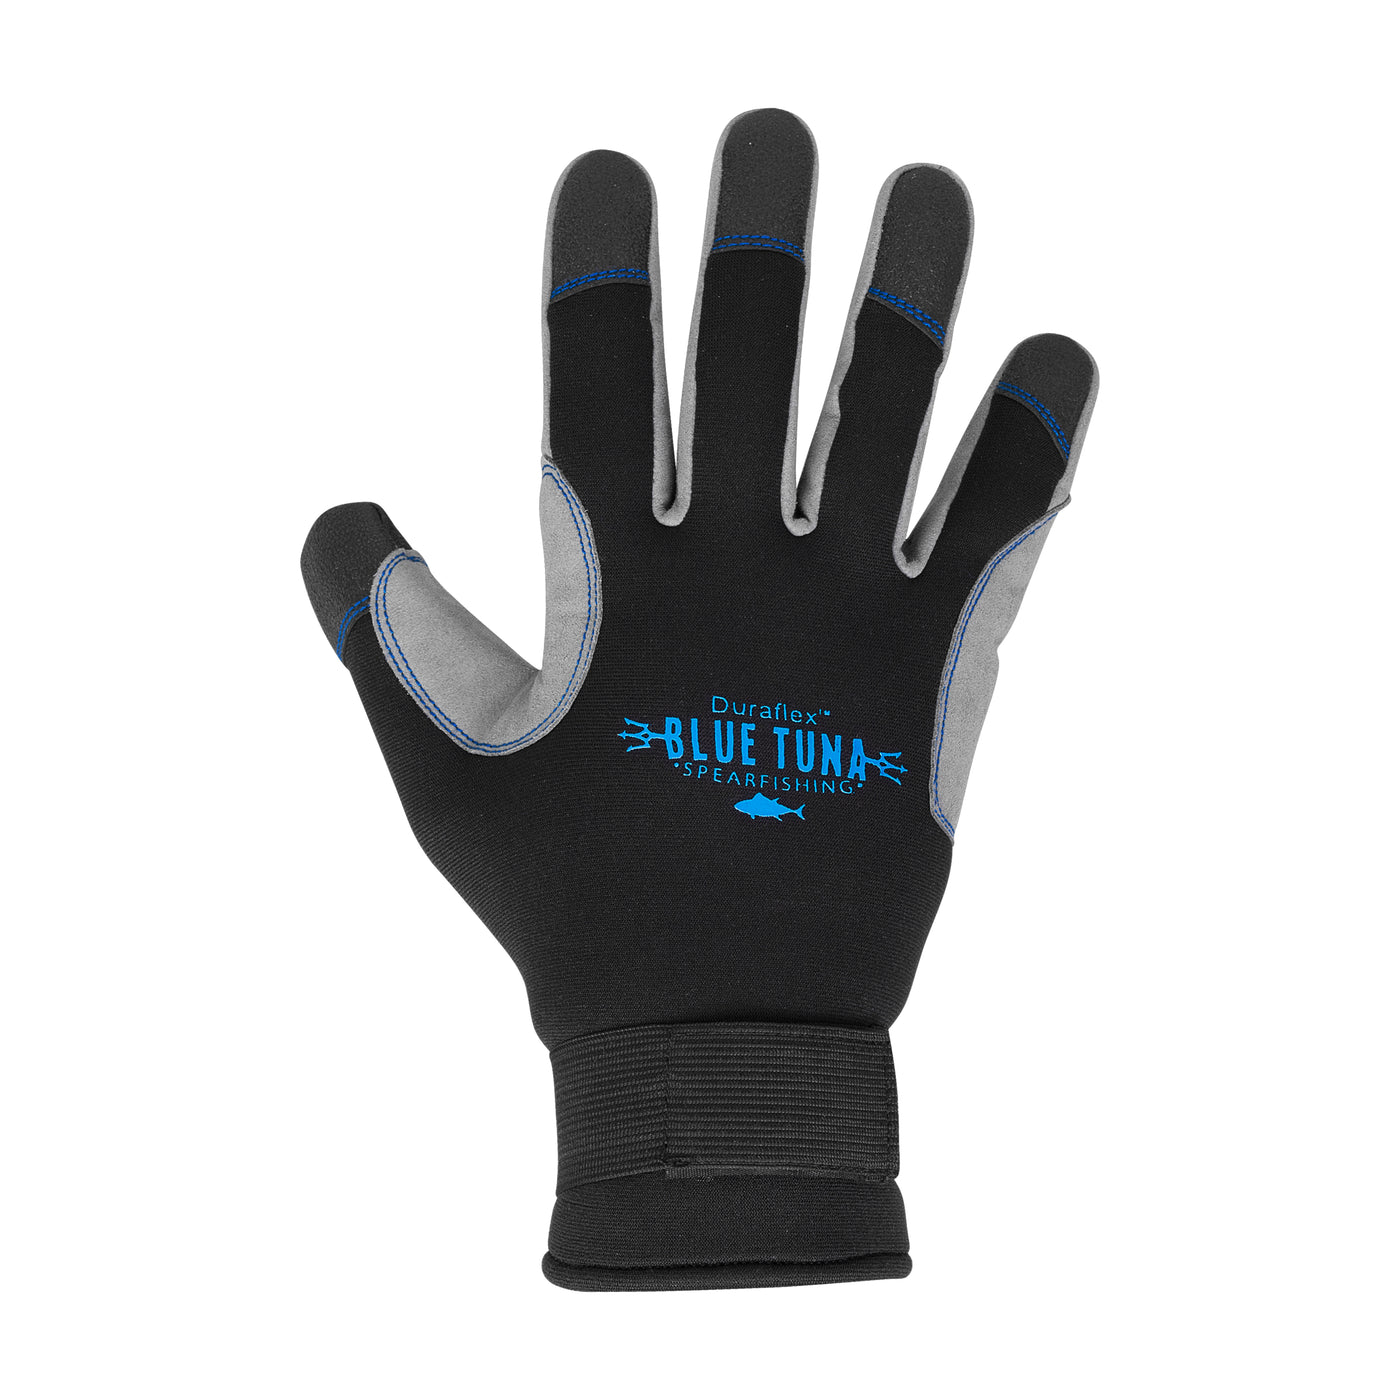 BTS DuraFlex 1.5mm Glove Spread fingers